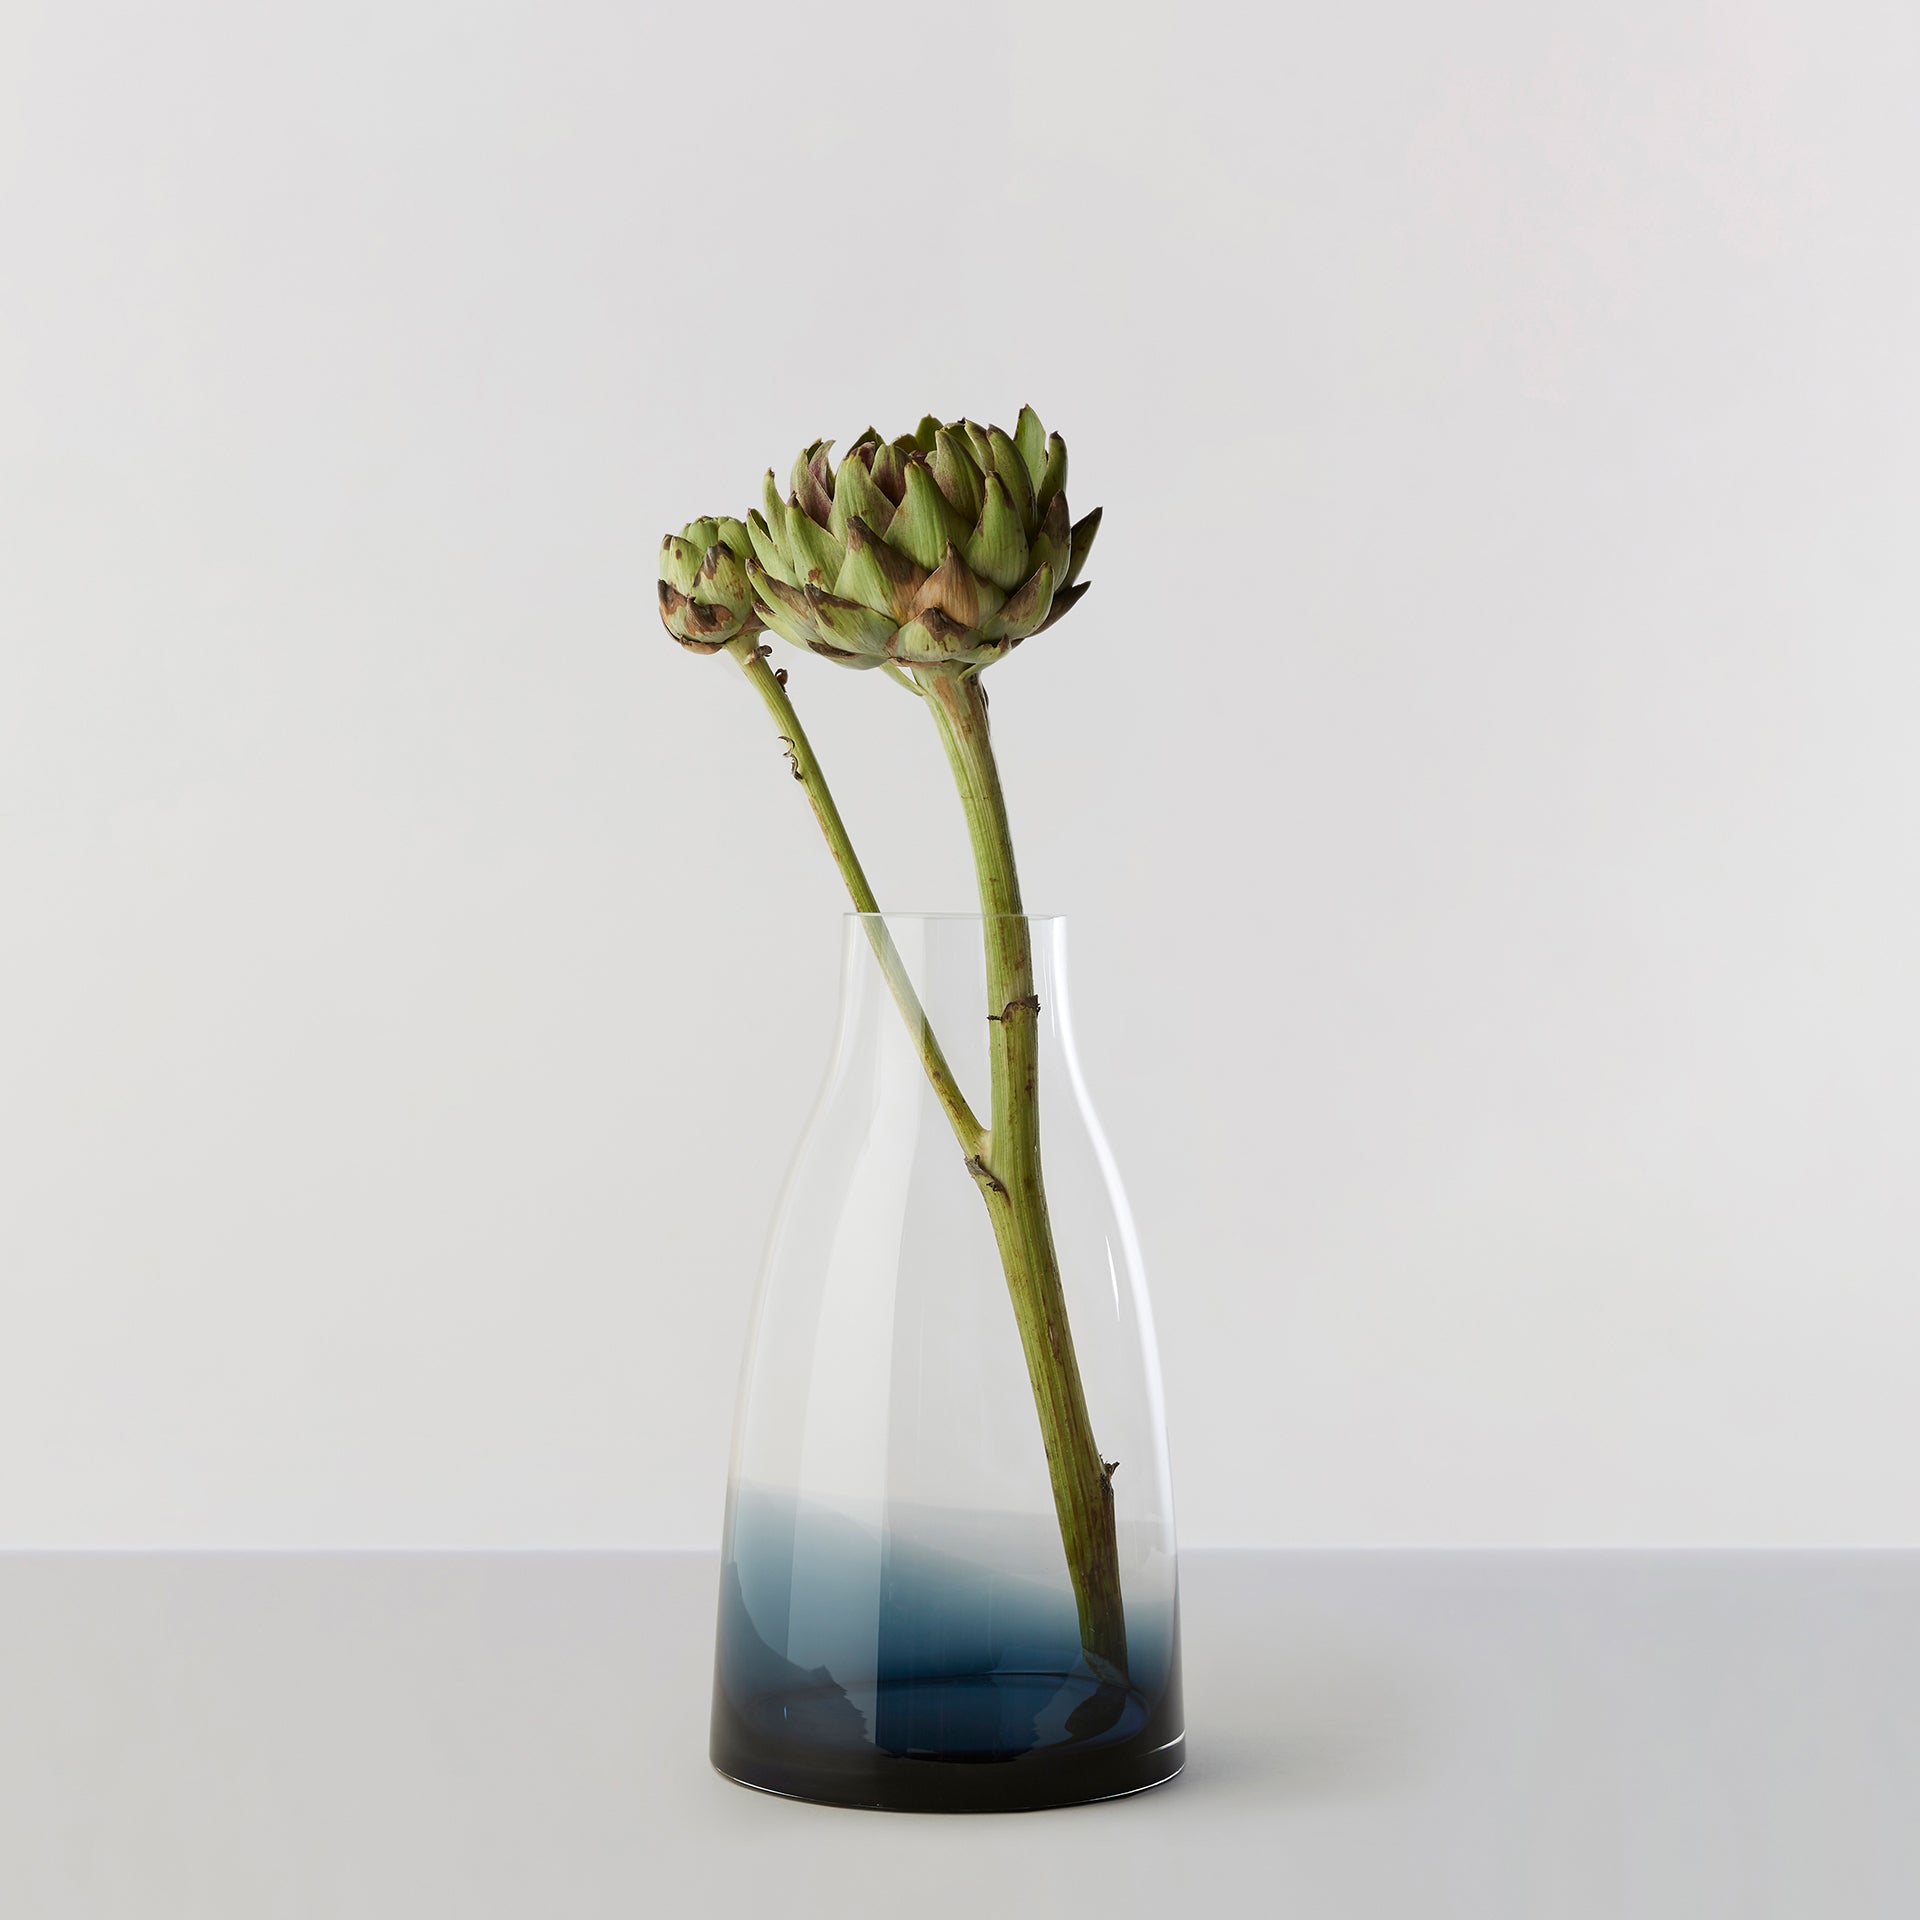 Billede af Flower Vase no. 3 - Indigo blue